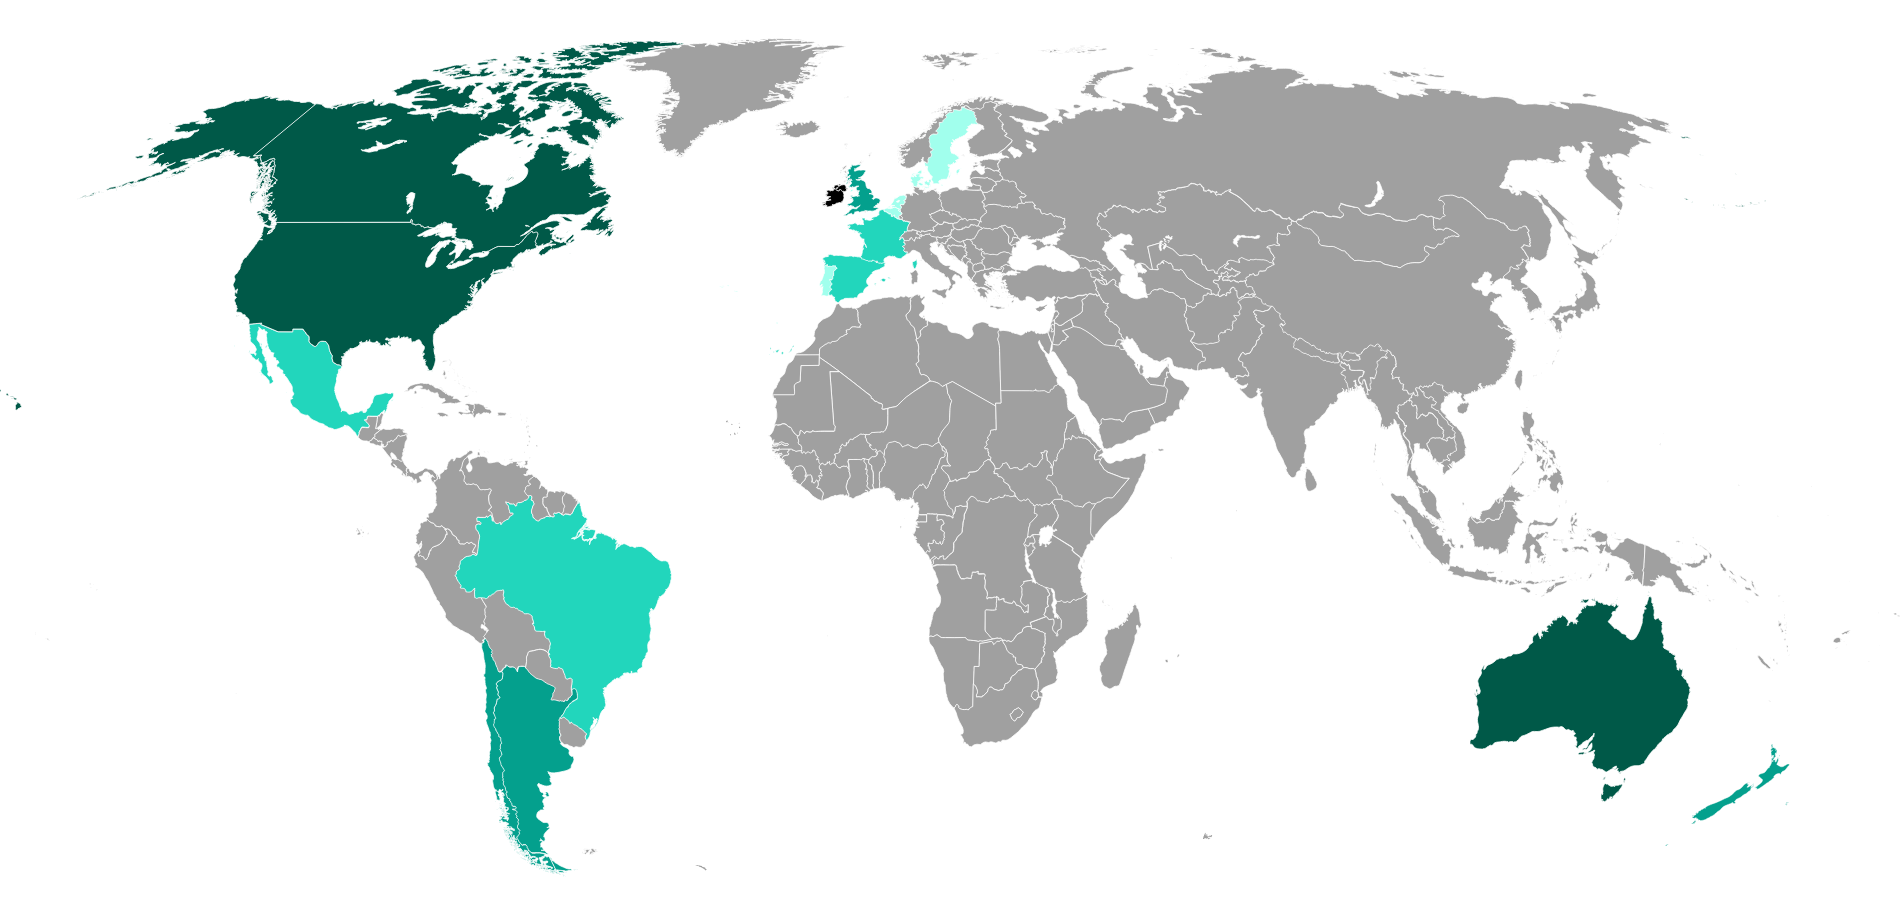 源于爱尔兰的人在世界各国的分布密度，深蓝色代表分布密集（资料来源：维基百科）